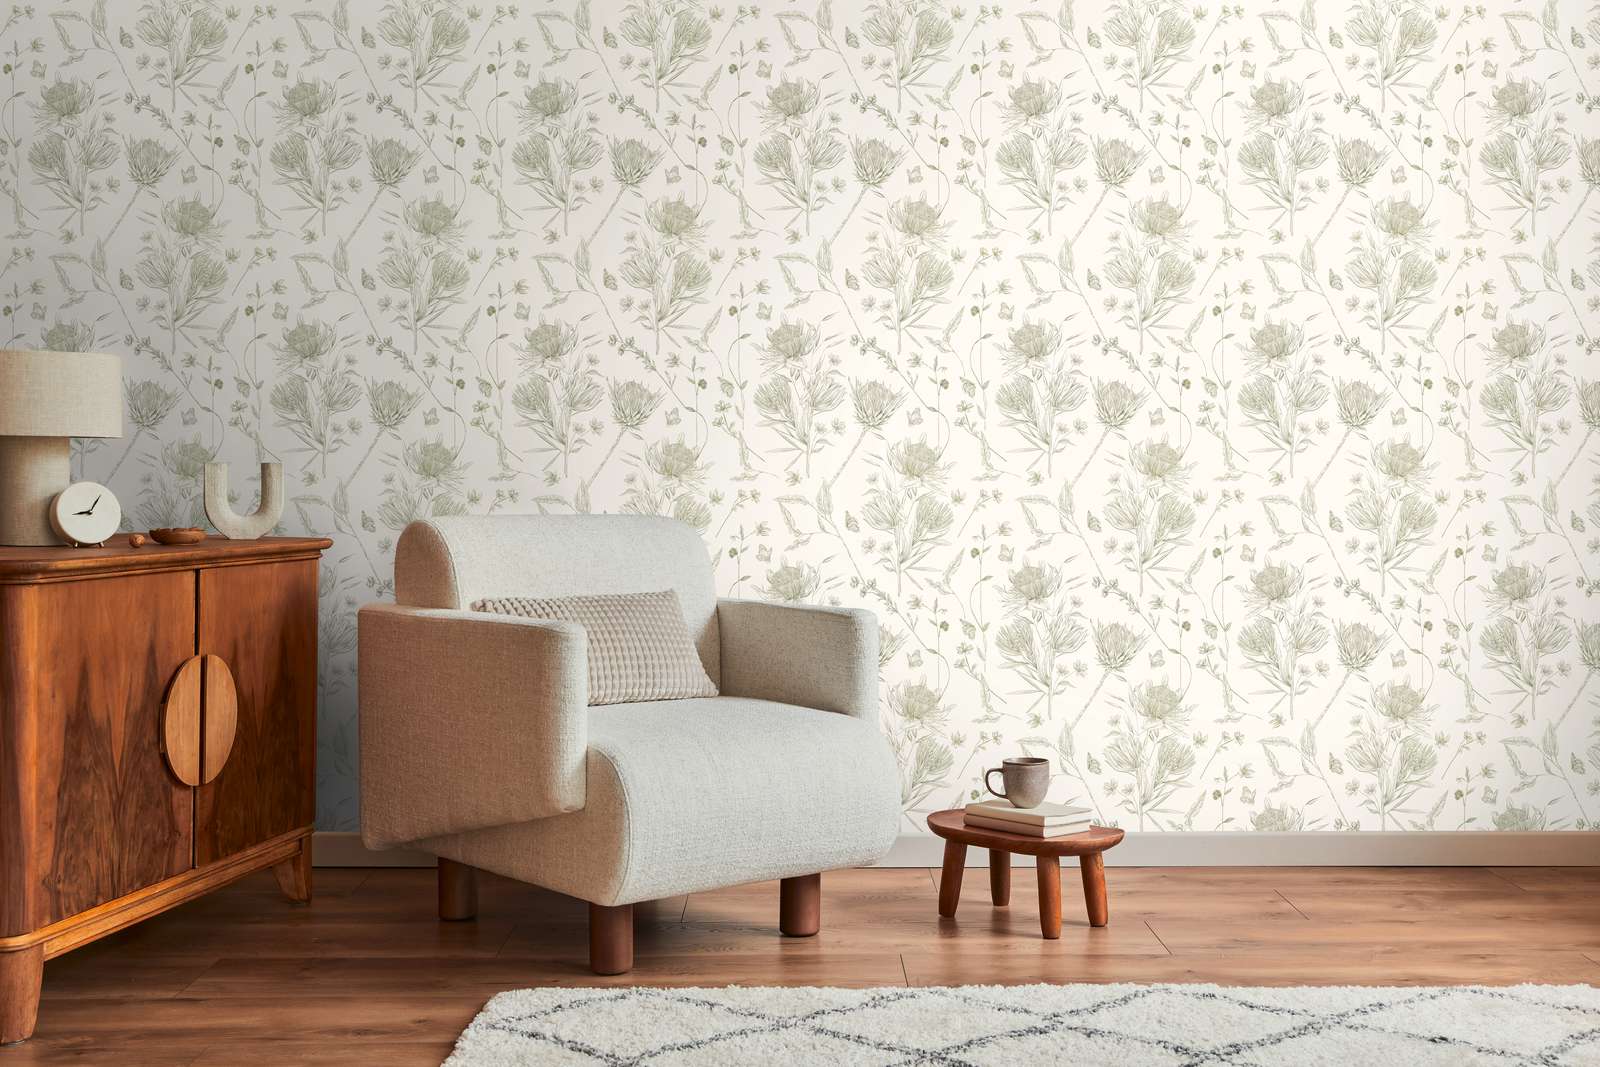             wallpaper floral with flowers & butterflies textured matt - white, green
        